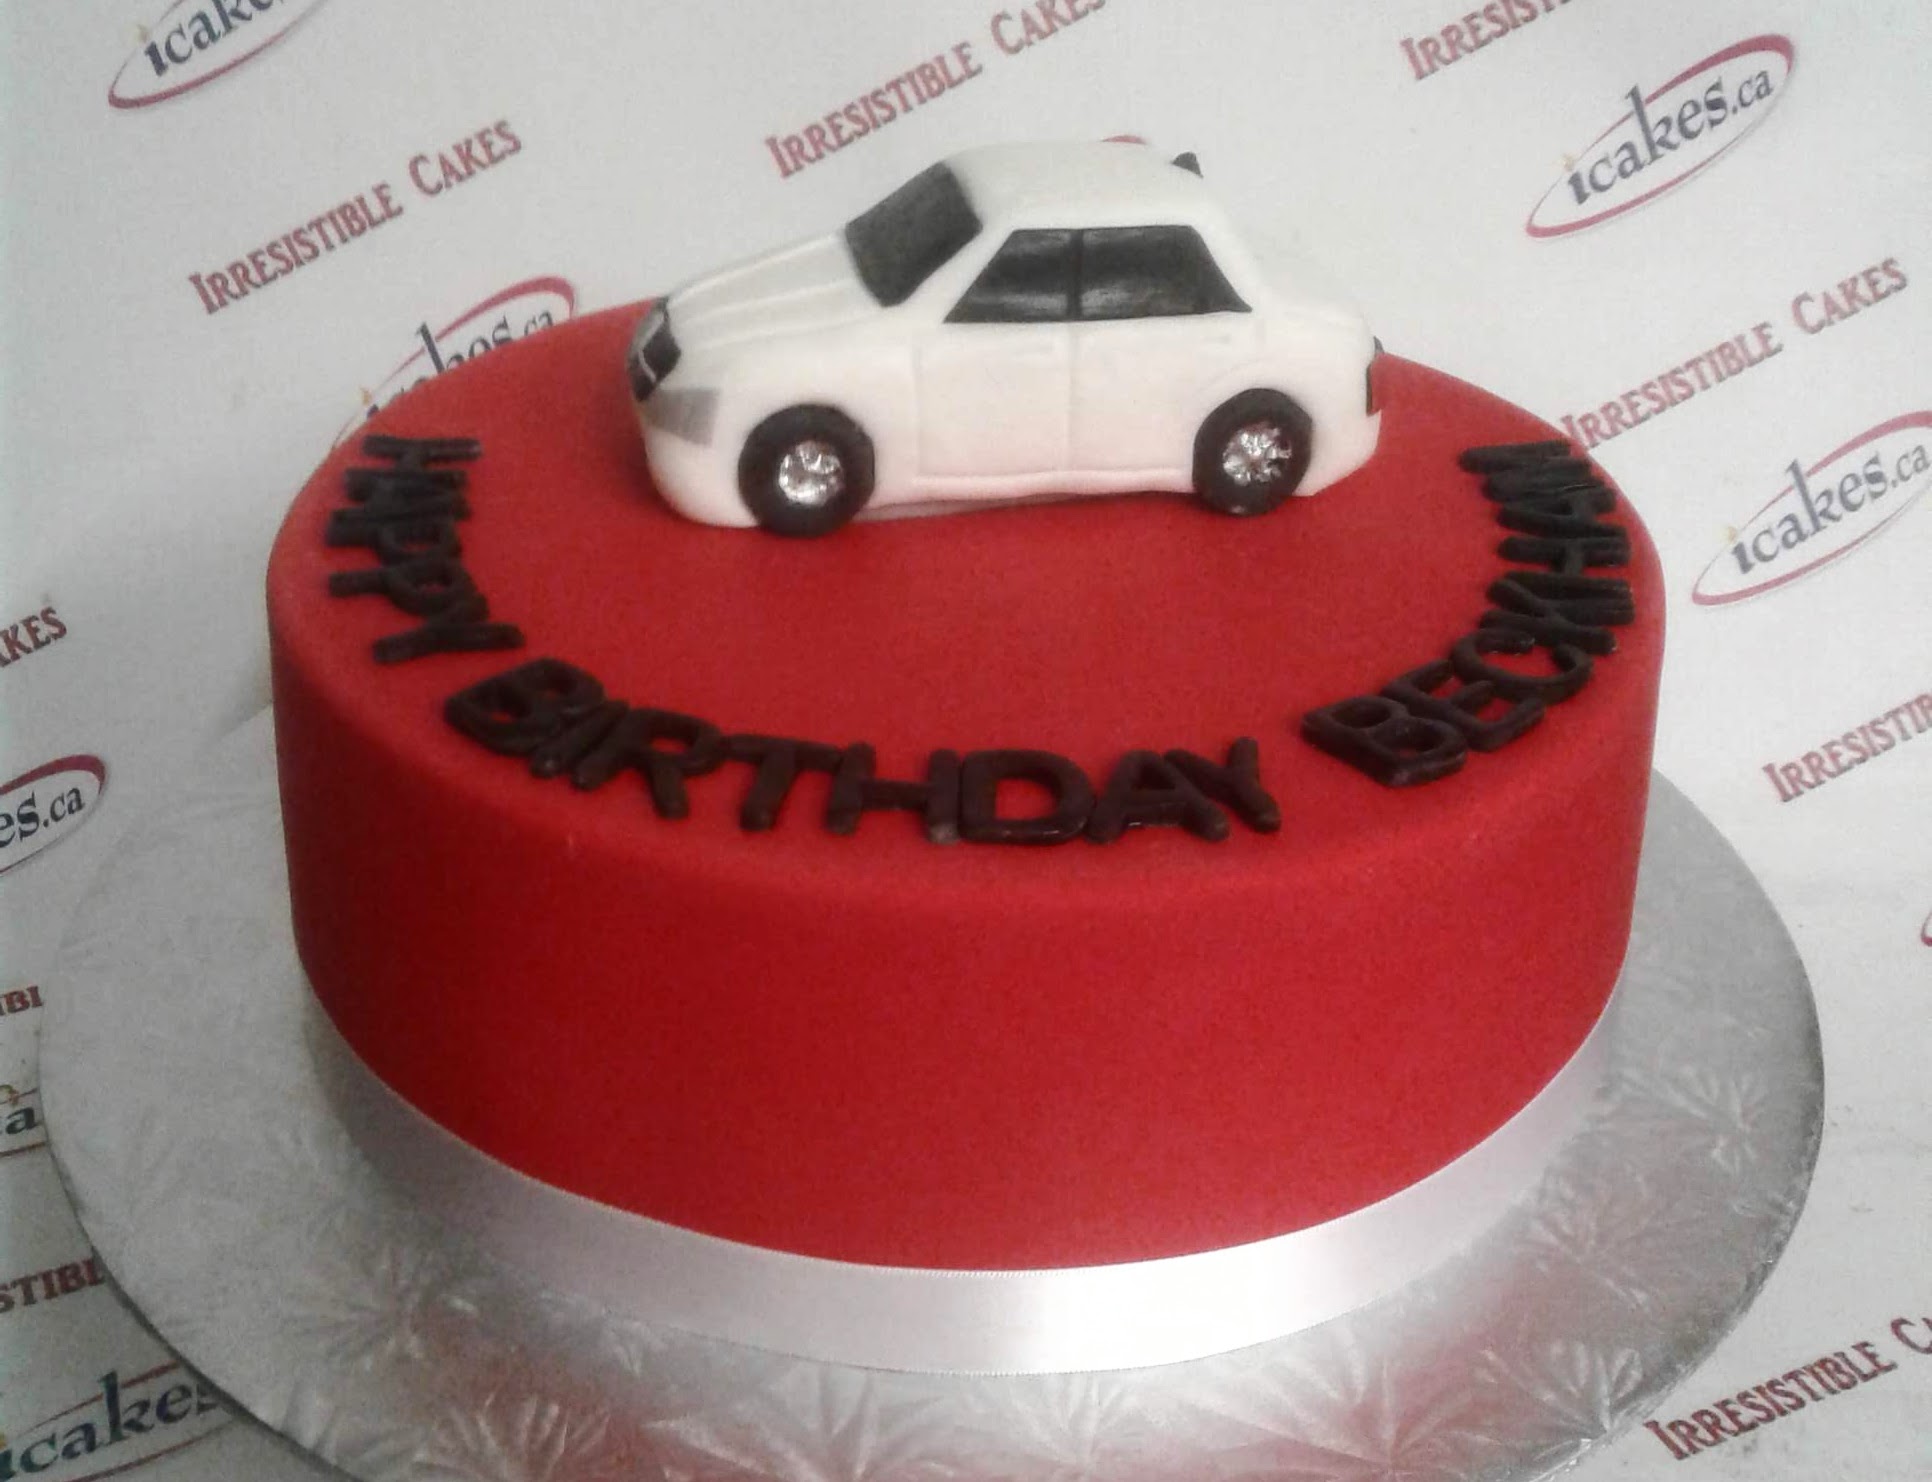 Mercedes Car Fondant Birthday Cake For Man/Boy